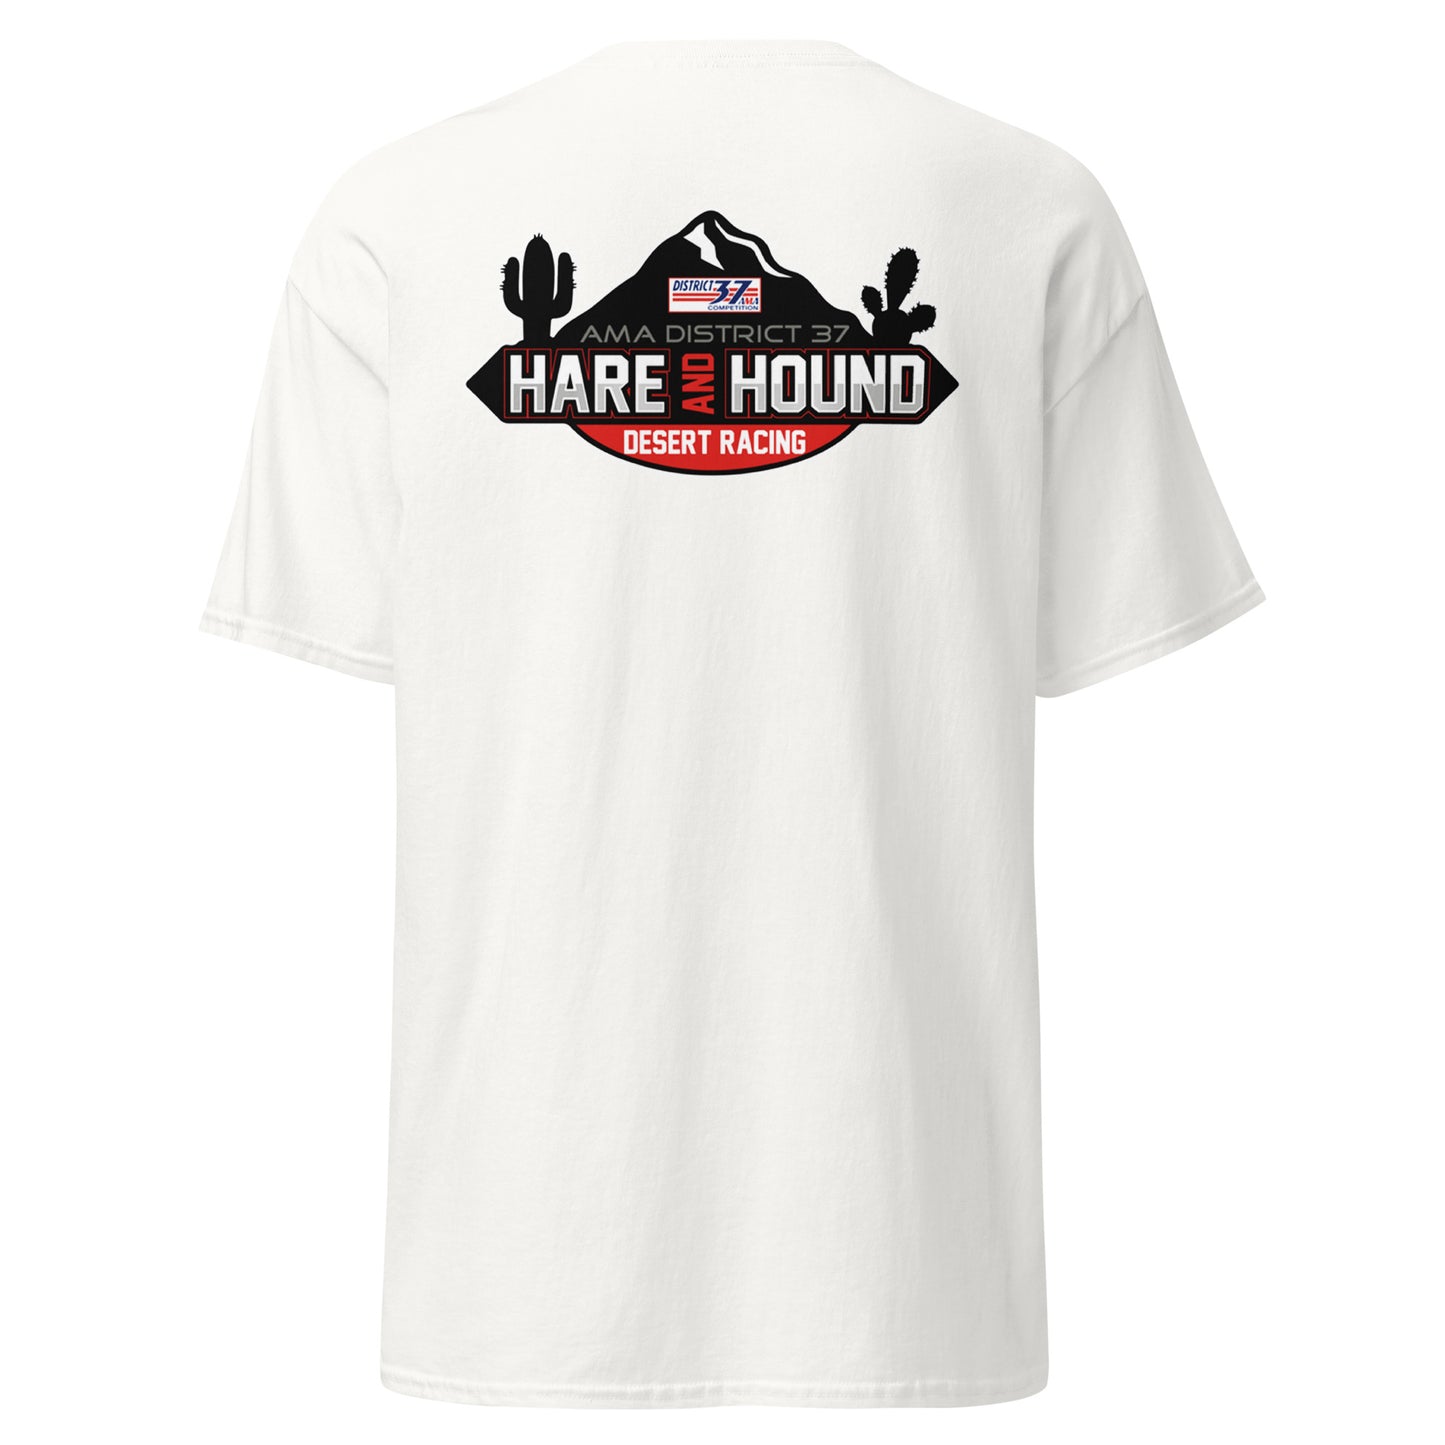 D37 Hare & Hound Series Shirt - Adult Size Shirt